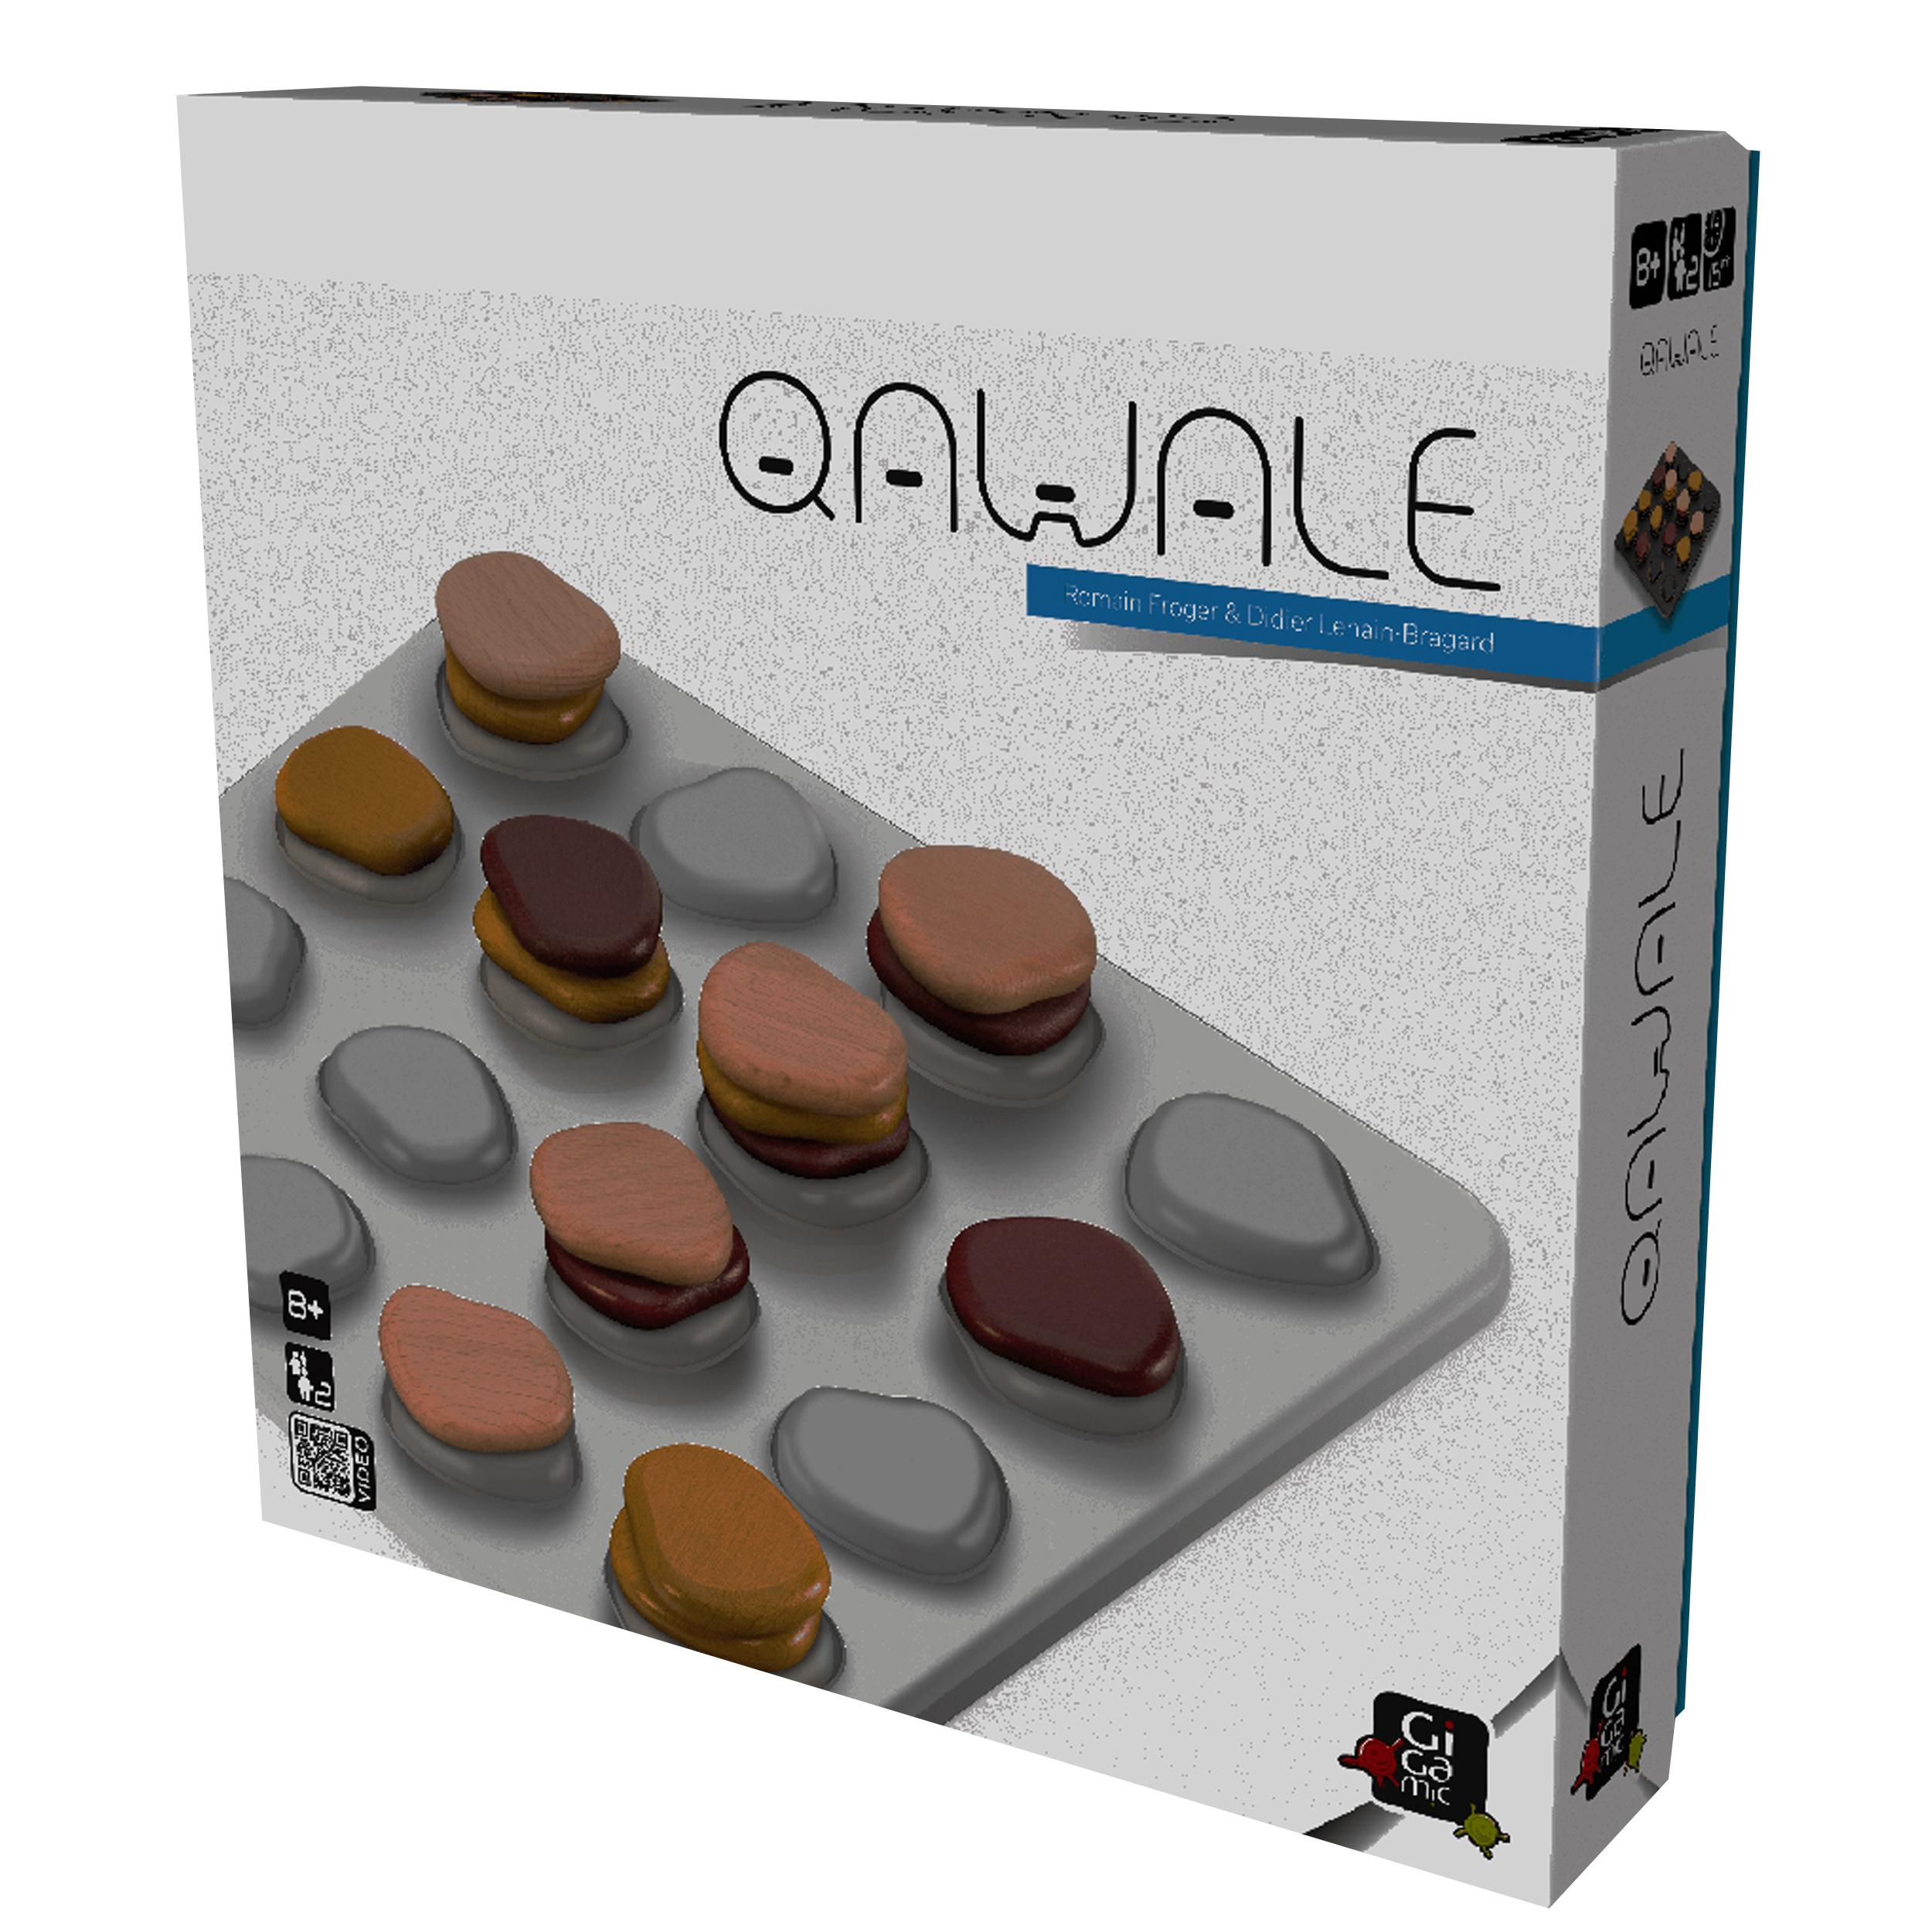 بازی فکری ژیگامیک مدل QAWALE